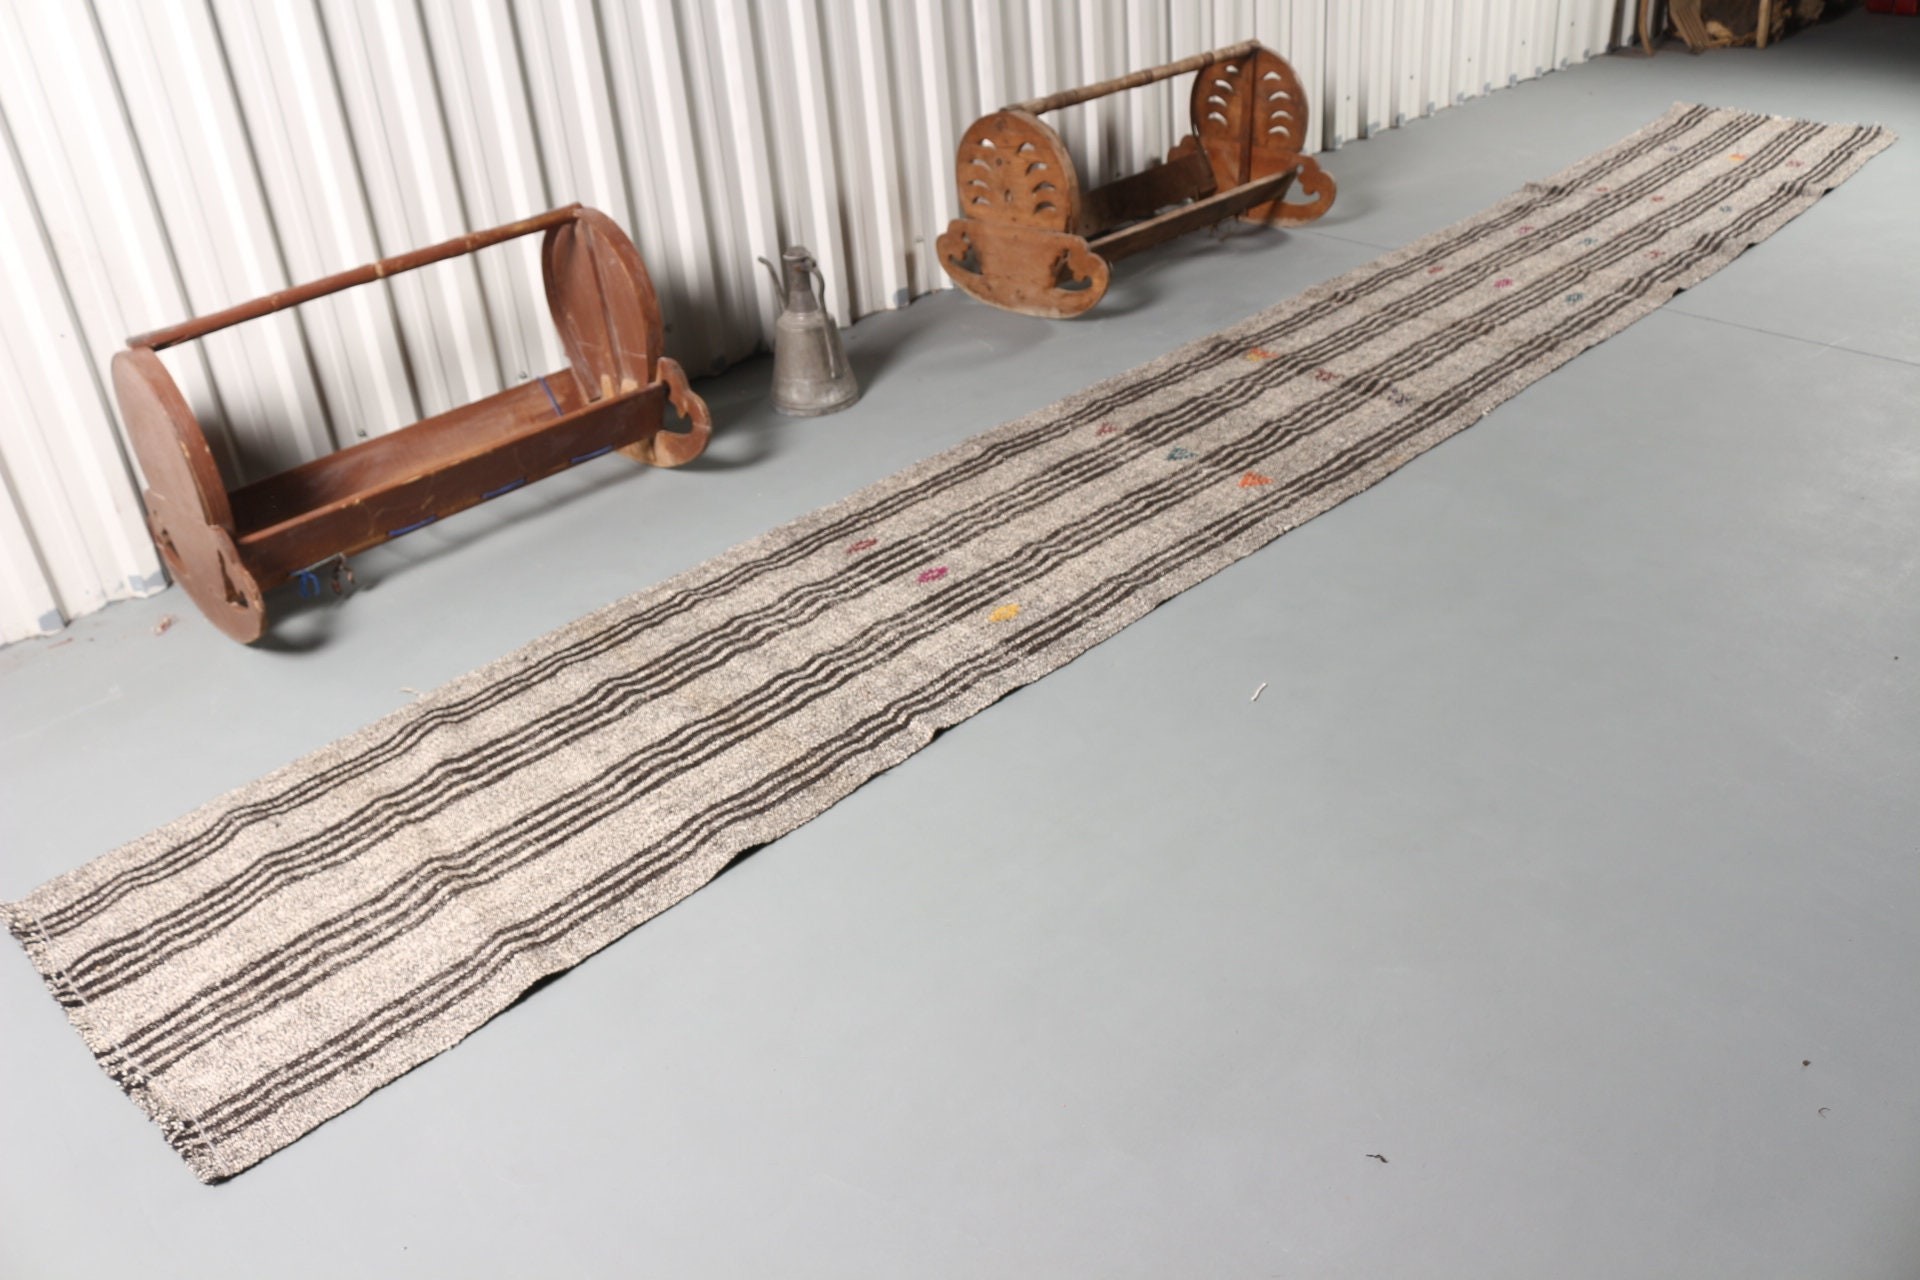 Vintage Rug, Aztec Rugs, Turkish Rug, Stair Rug, Wool Rug, Corridor Rug, Beige  2.5x18.3 ft Runner Rug, Kilim